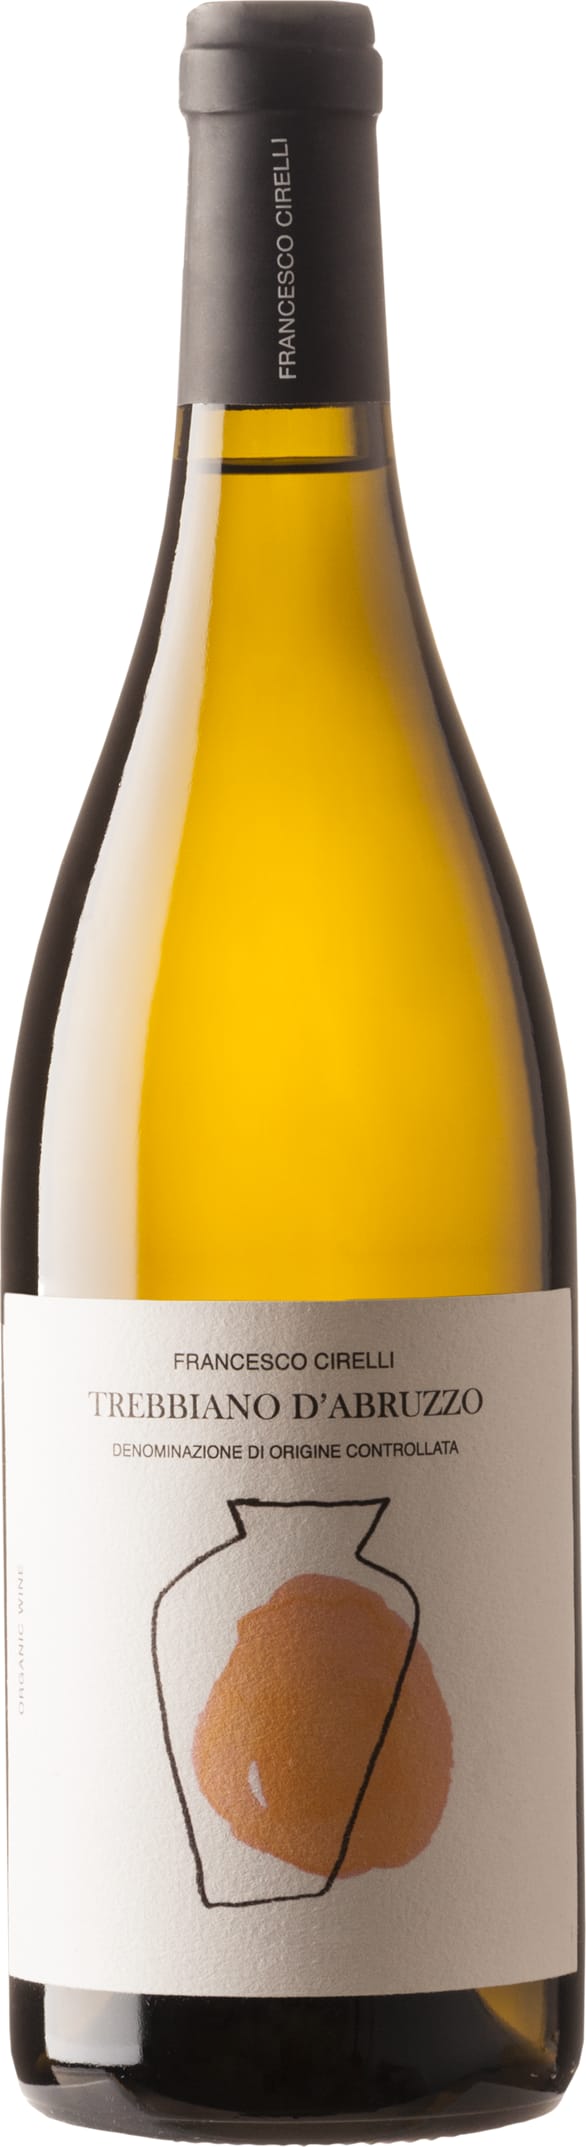 Francesco Cirelli Trebbiano d'Abruzzo DOC Anfora Organic 2022 75cl - Buy Francesco Cirelli Wines from GREAT WINES DIRECT wine shop